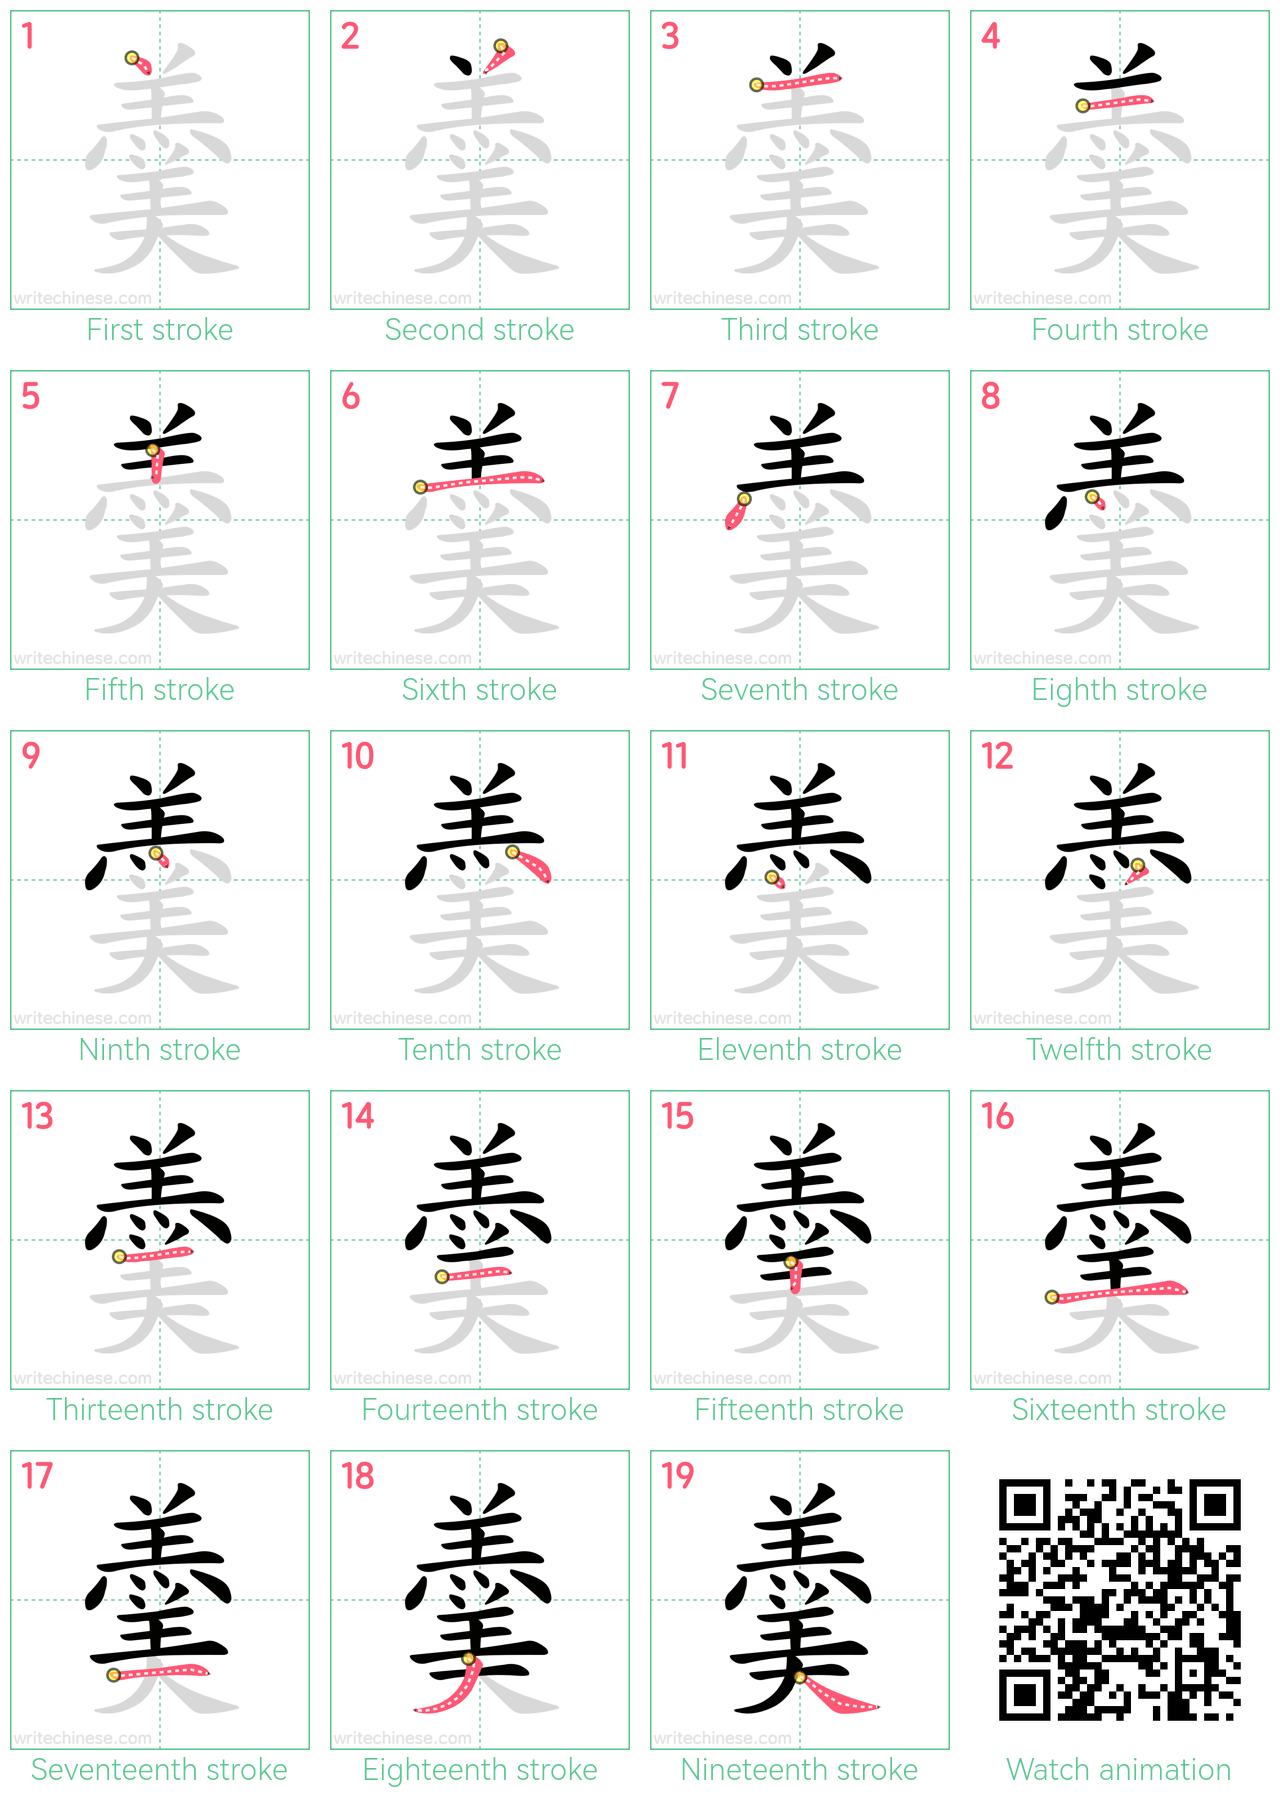 羹 step-by-step stroke order diagrams